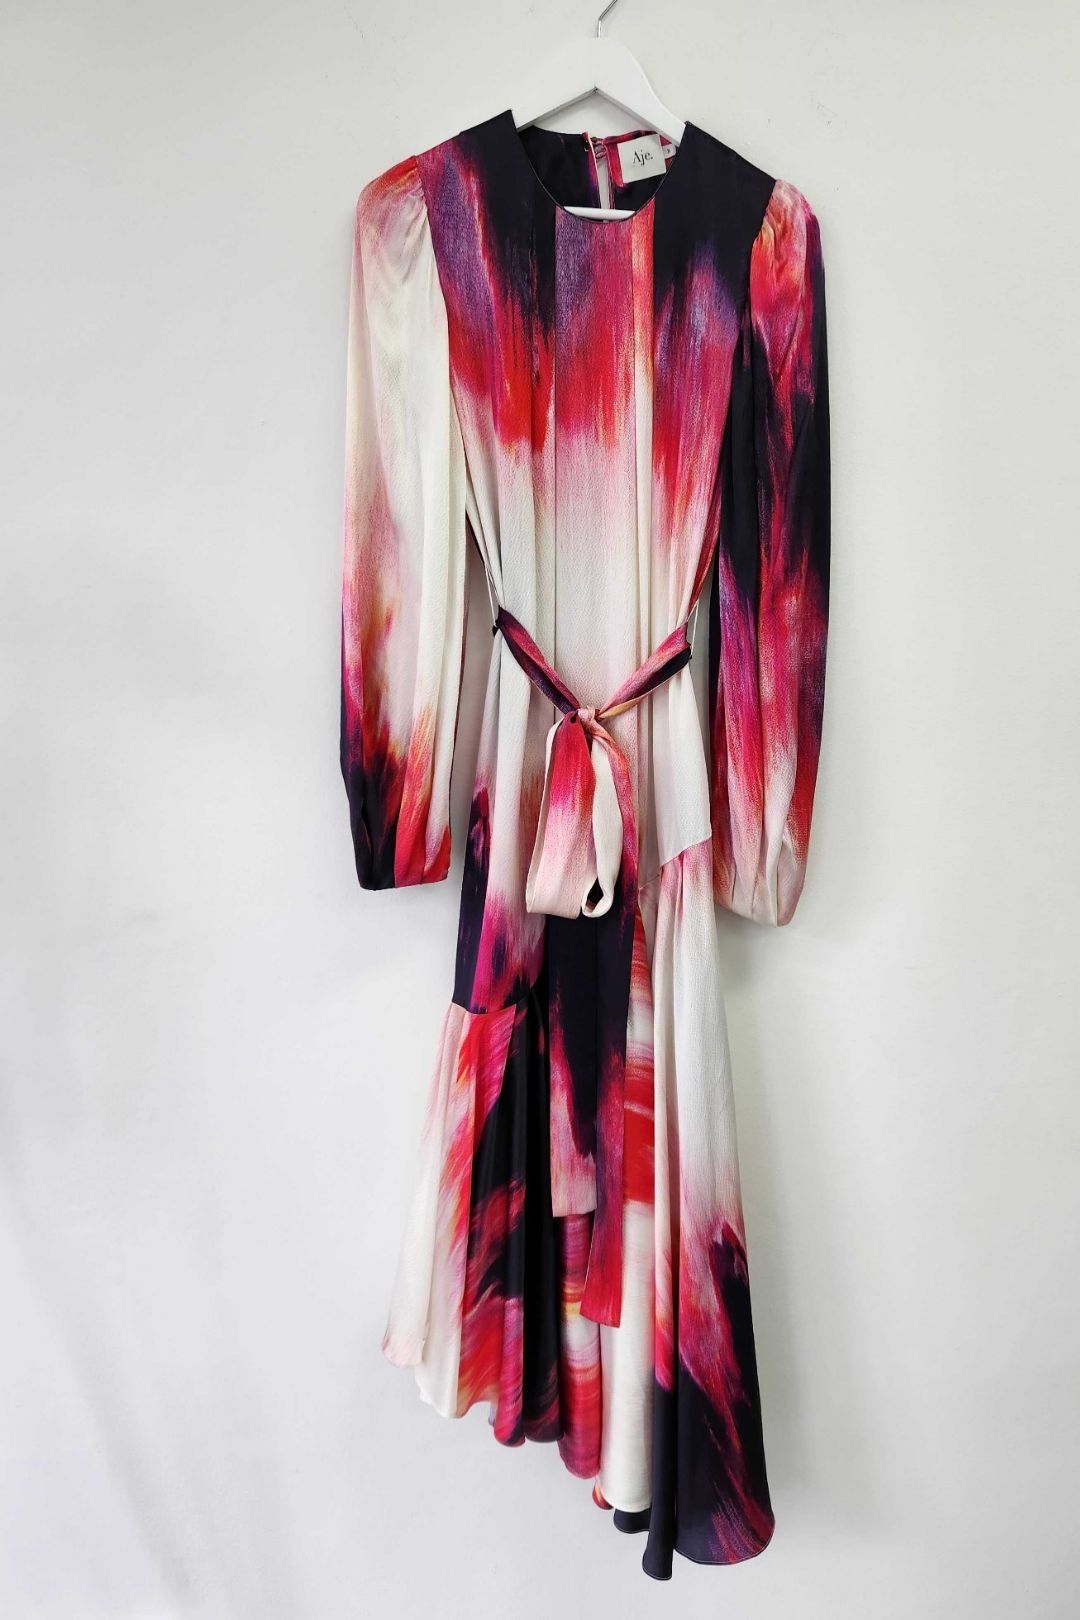 AJE - Helena Miami Dye Maxi Dress